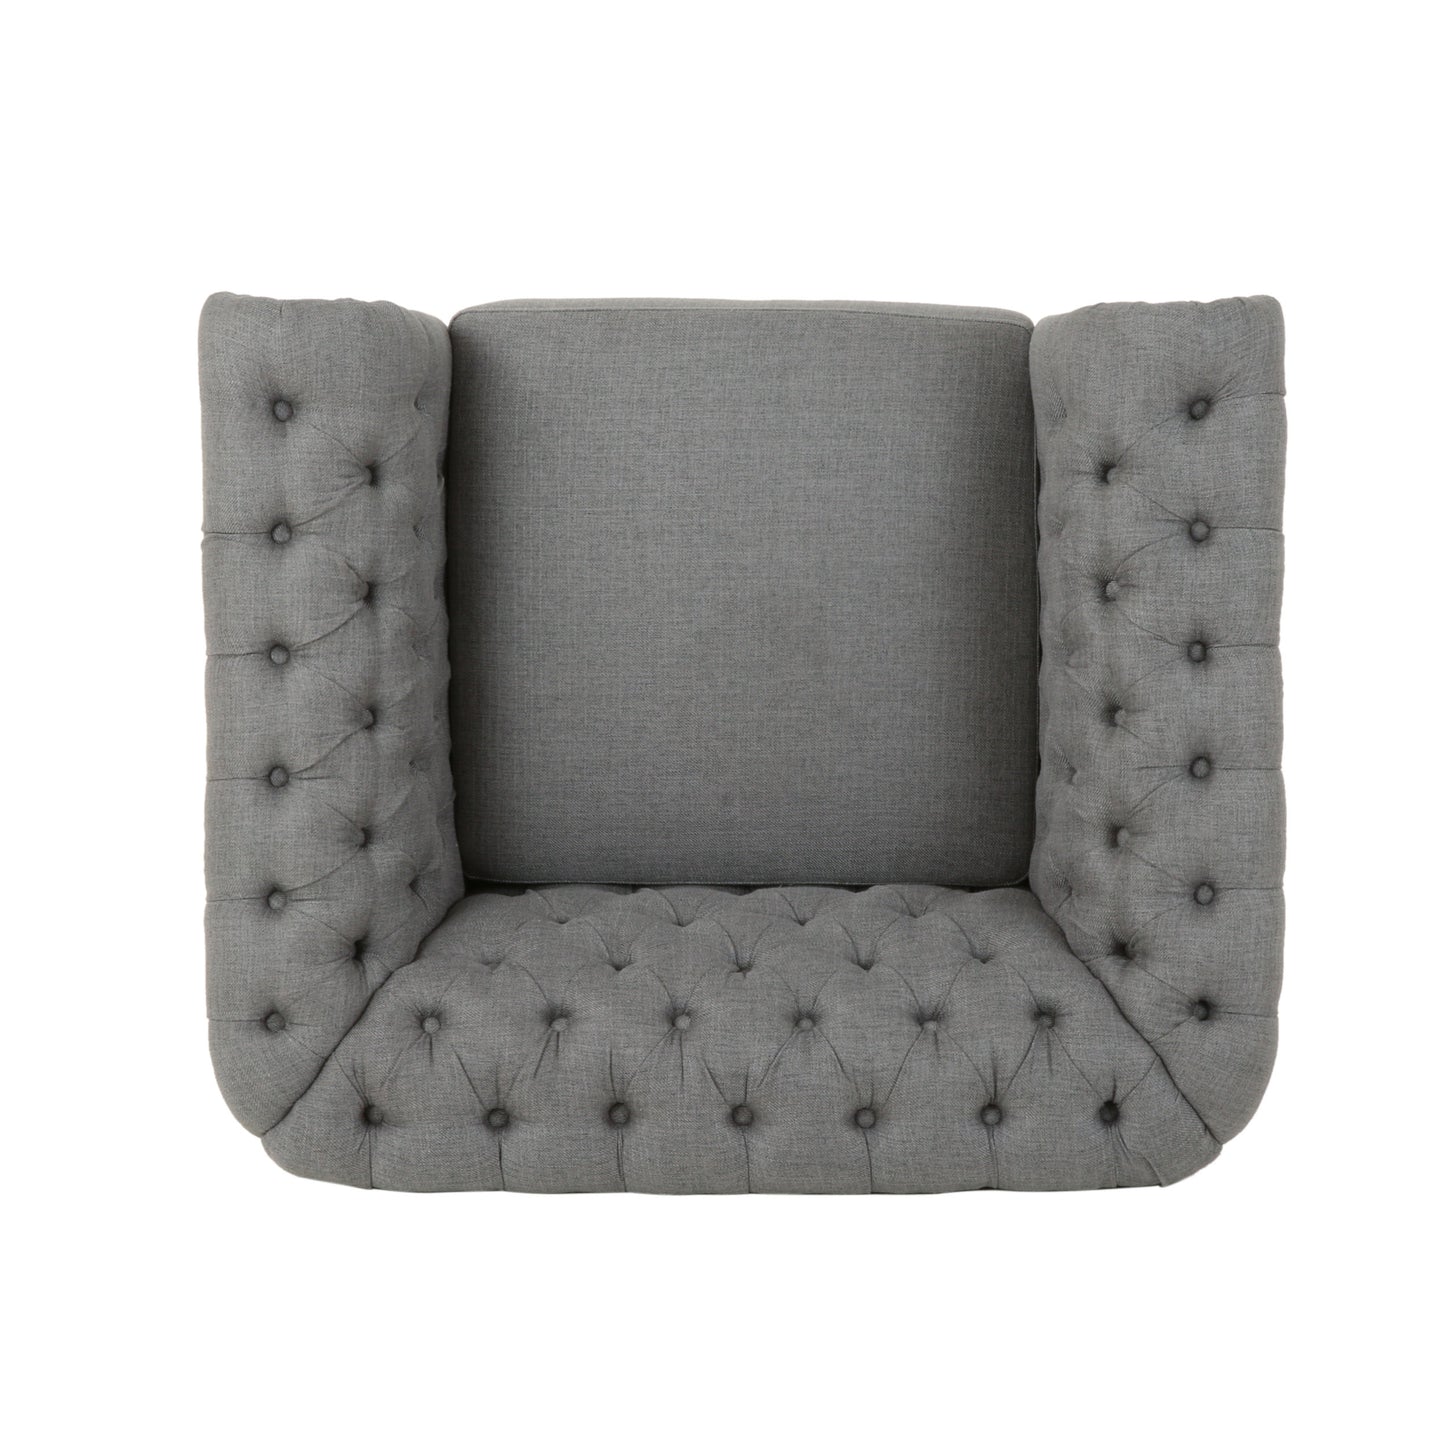 Leila Chesterfield Fabric Club Chair